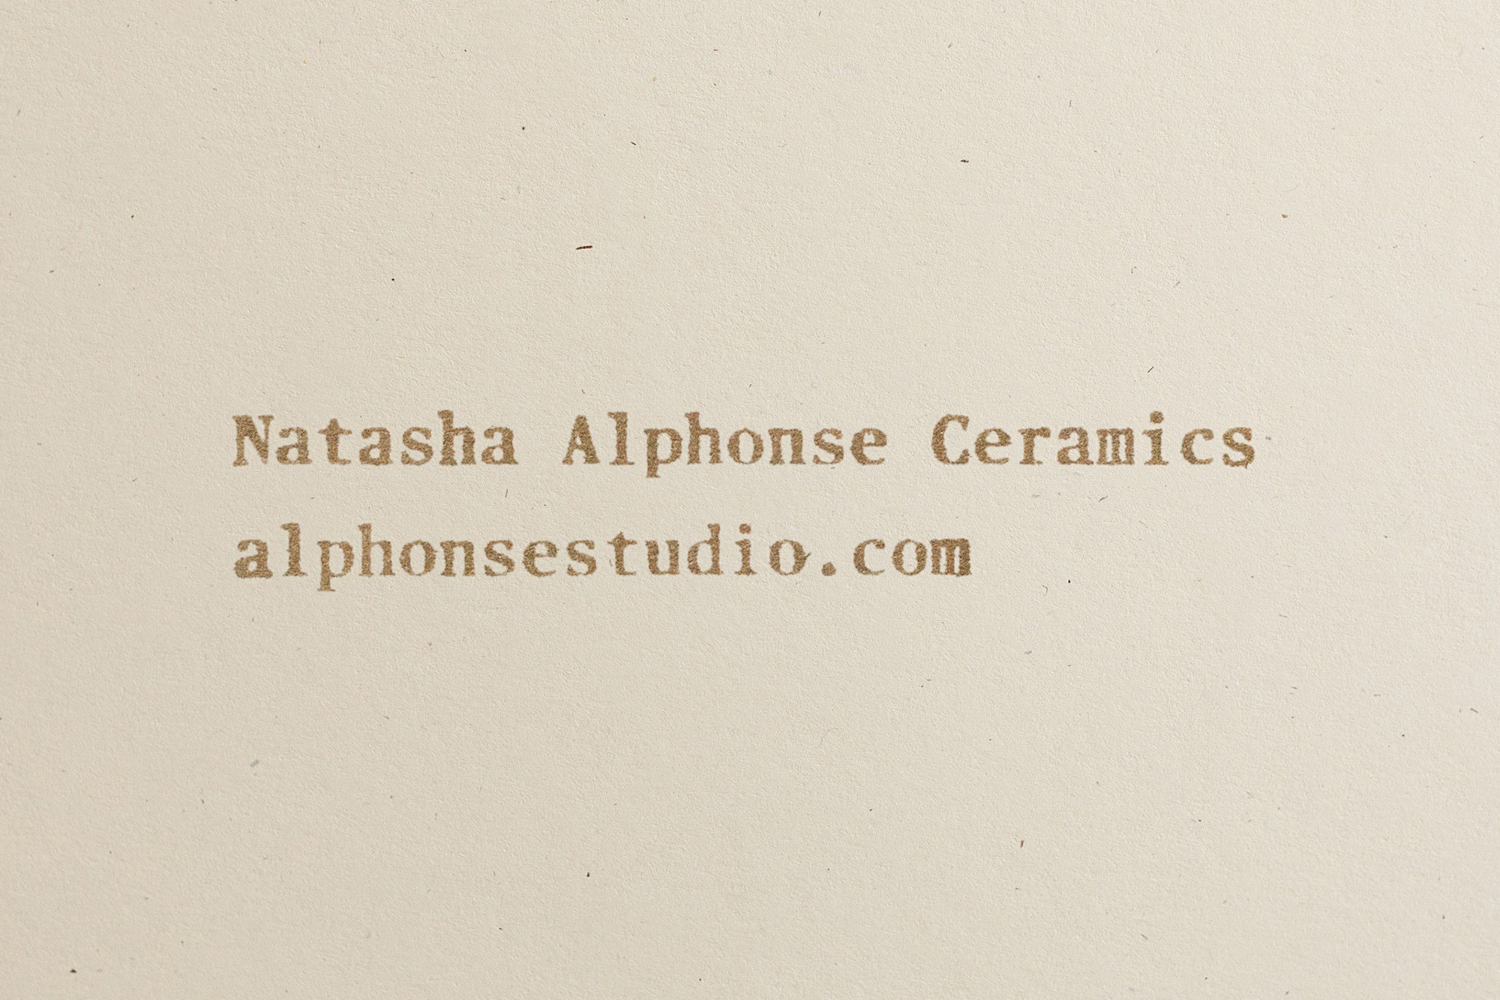 04-Natasha-Alphonse-Ceramics-Branding-Print-Shore-USA-BPO